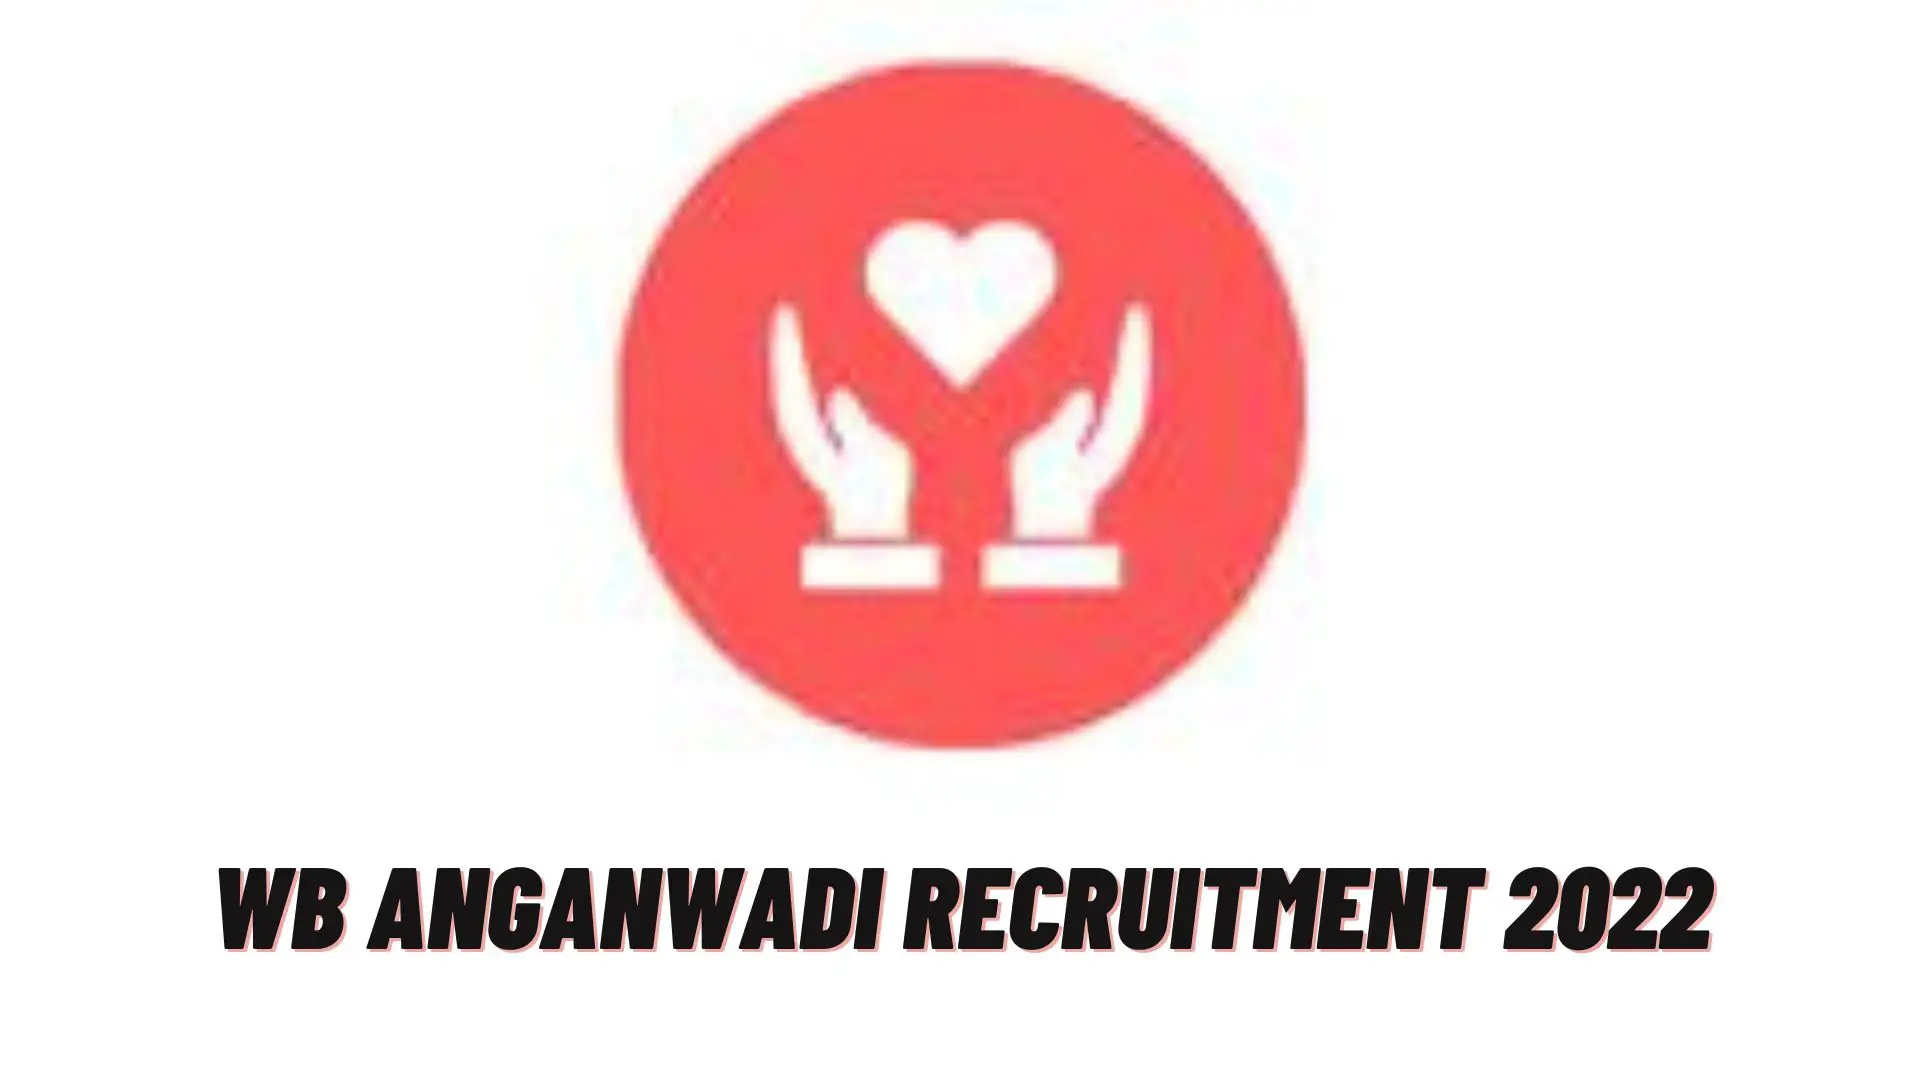 WB Anganwadi Recruitment 2022